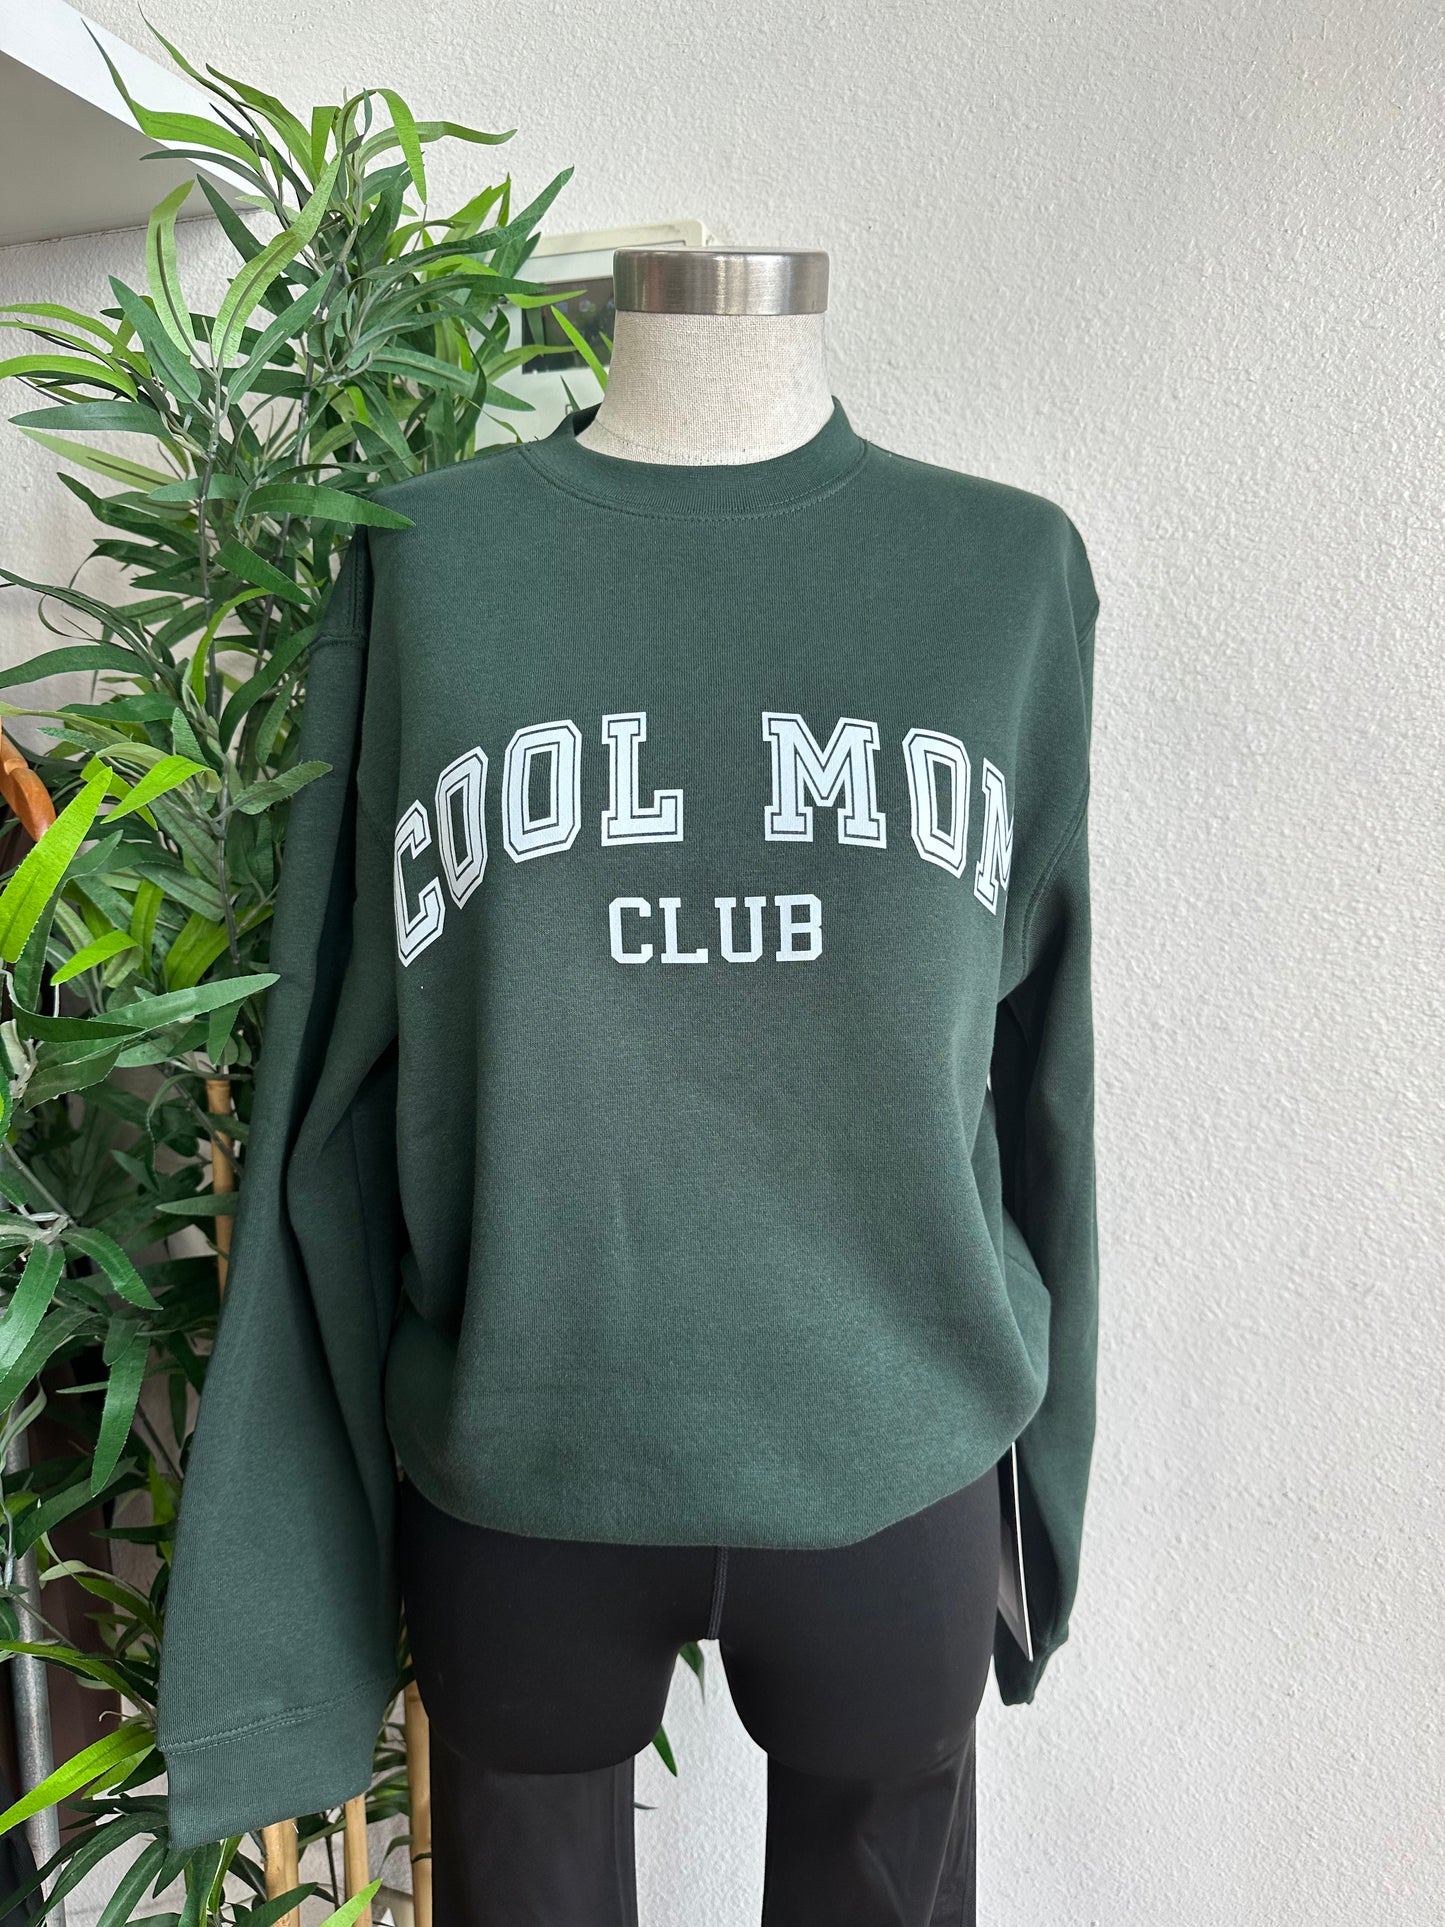 Cool mom club emerald